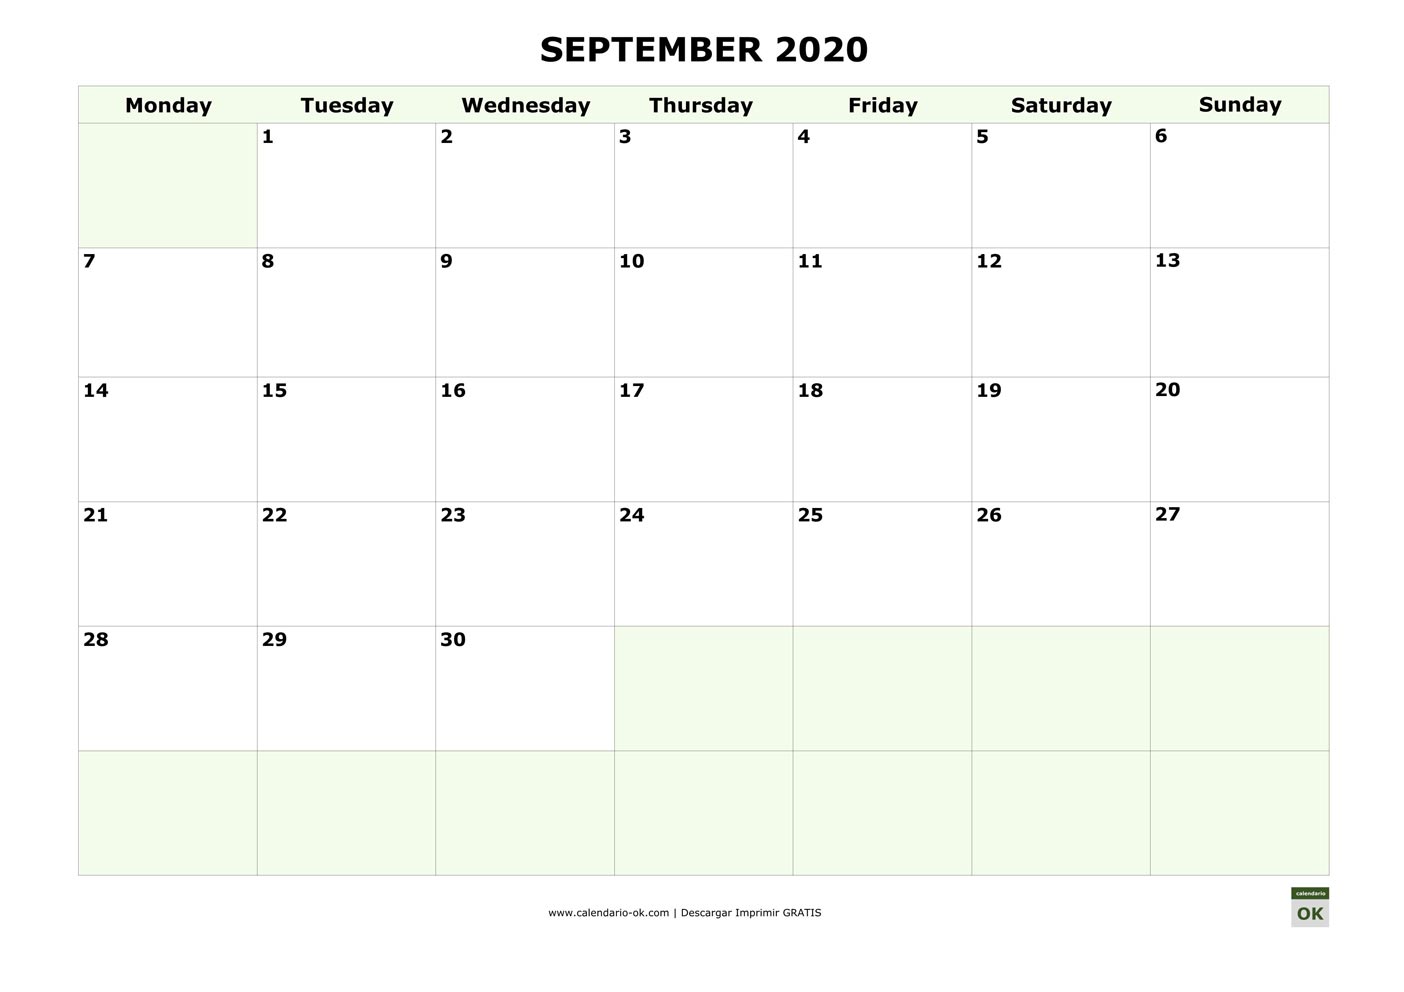 SEPTIEMBRE 2020 calendario en INGLES